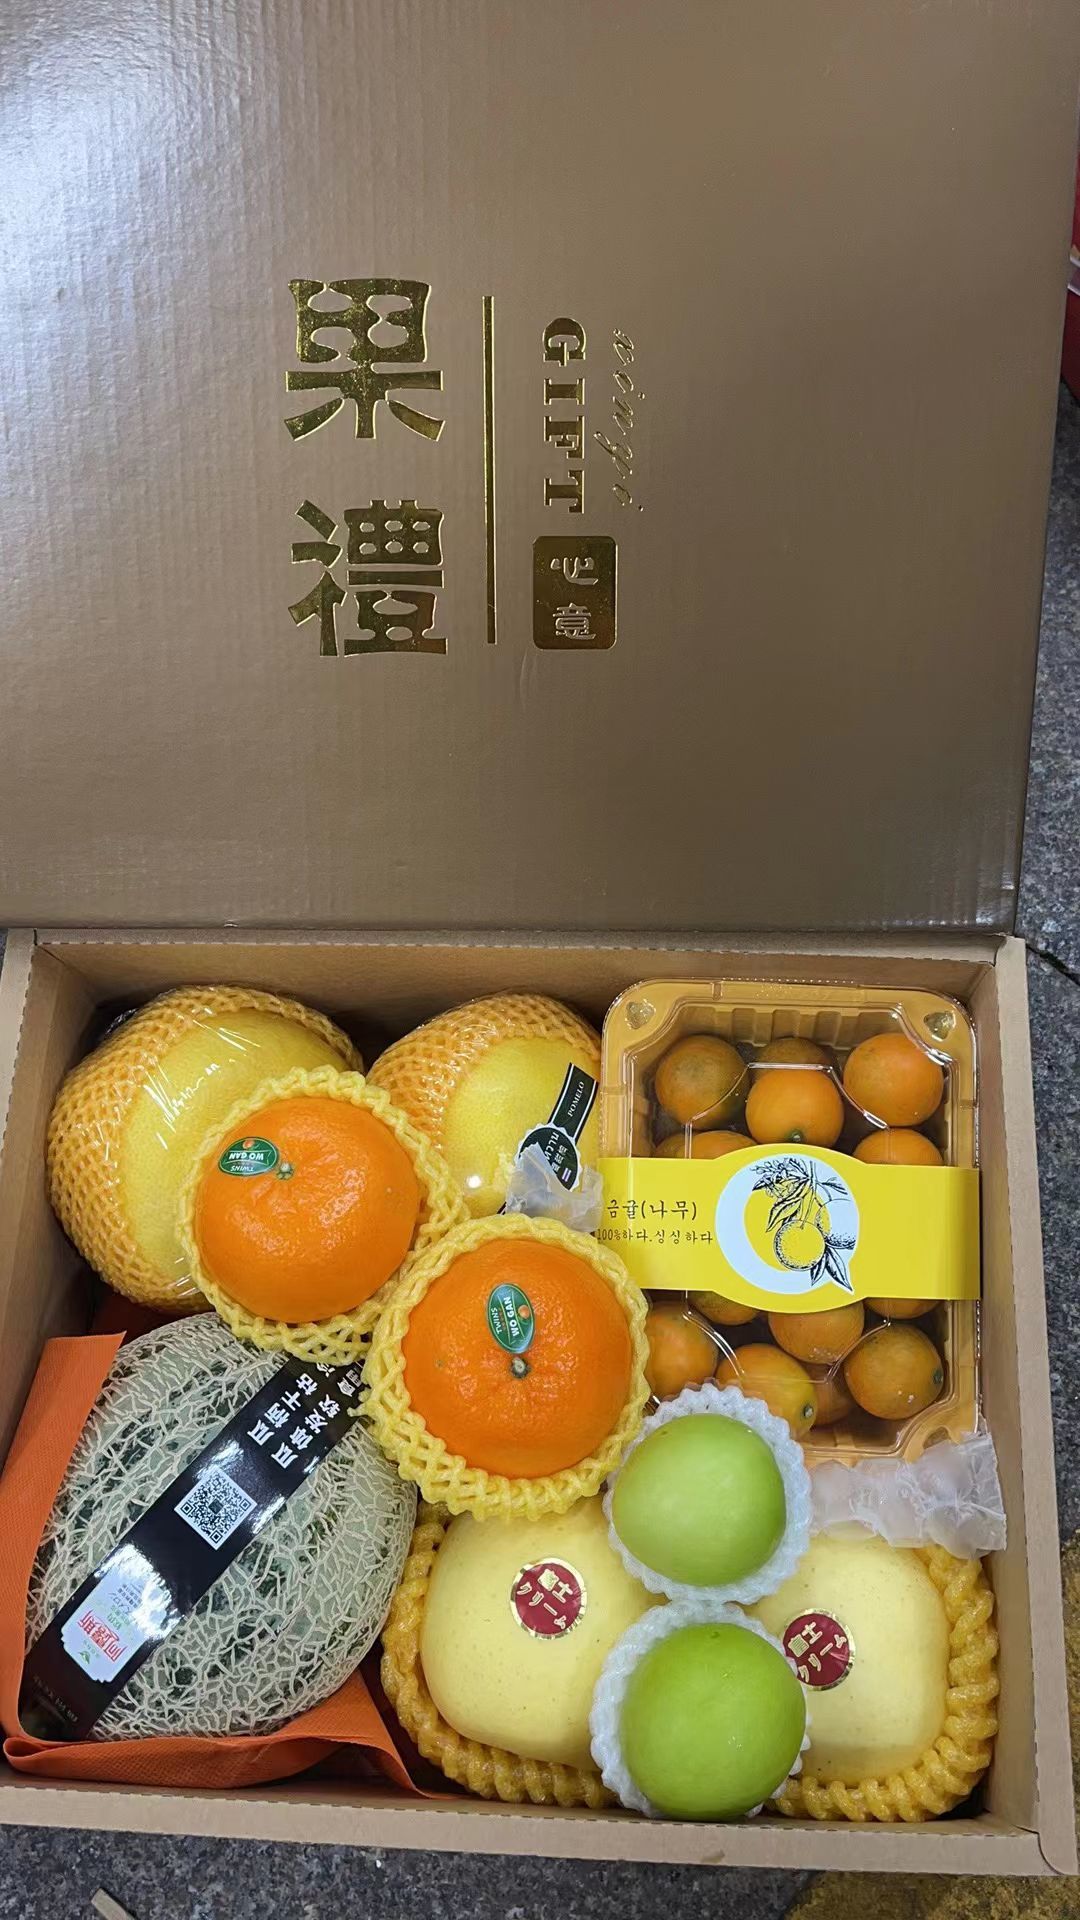 深圳小方水果批发行的主播照片